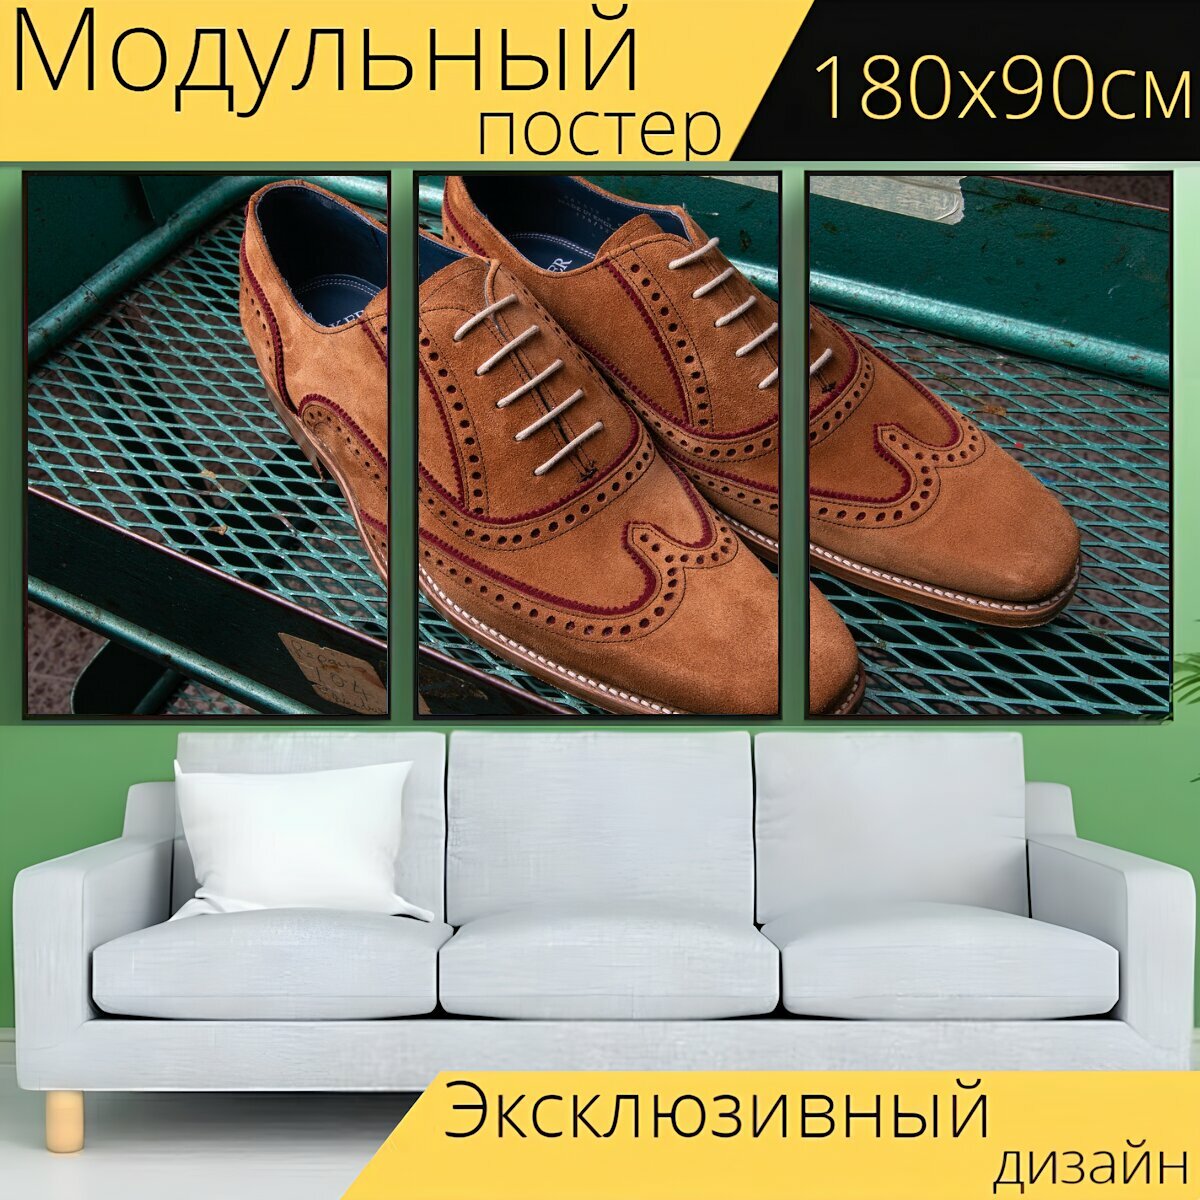 Модульный постер "Броги, мужская обувь броги, кожаные броги" 180 x 90 см. для интерьера